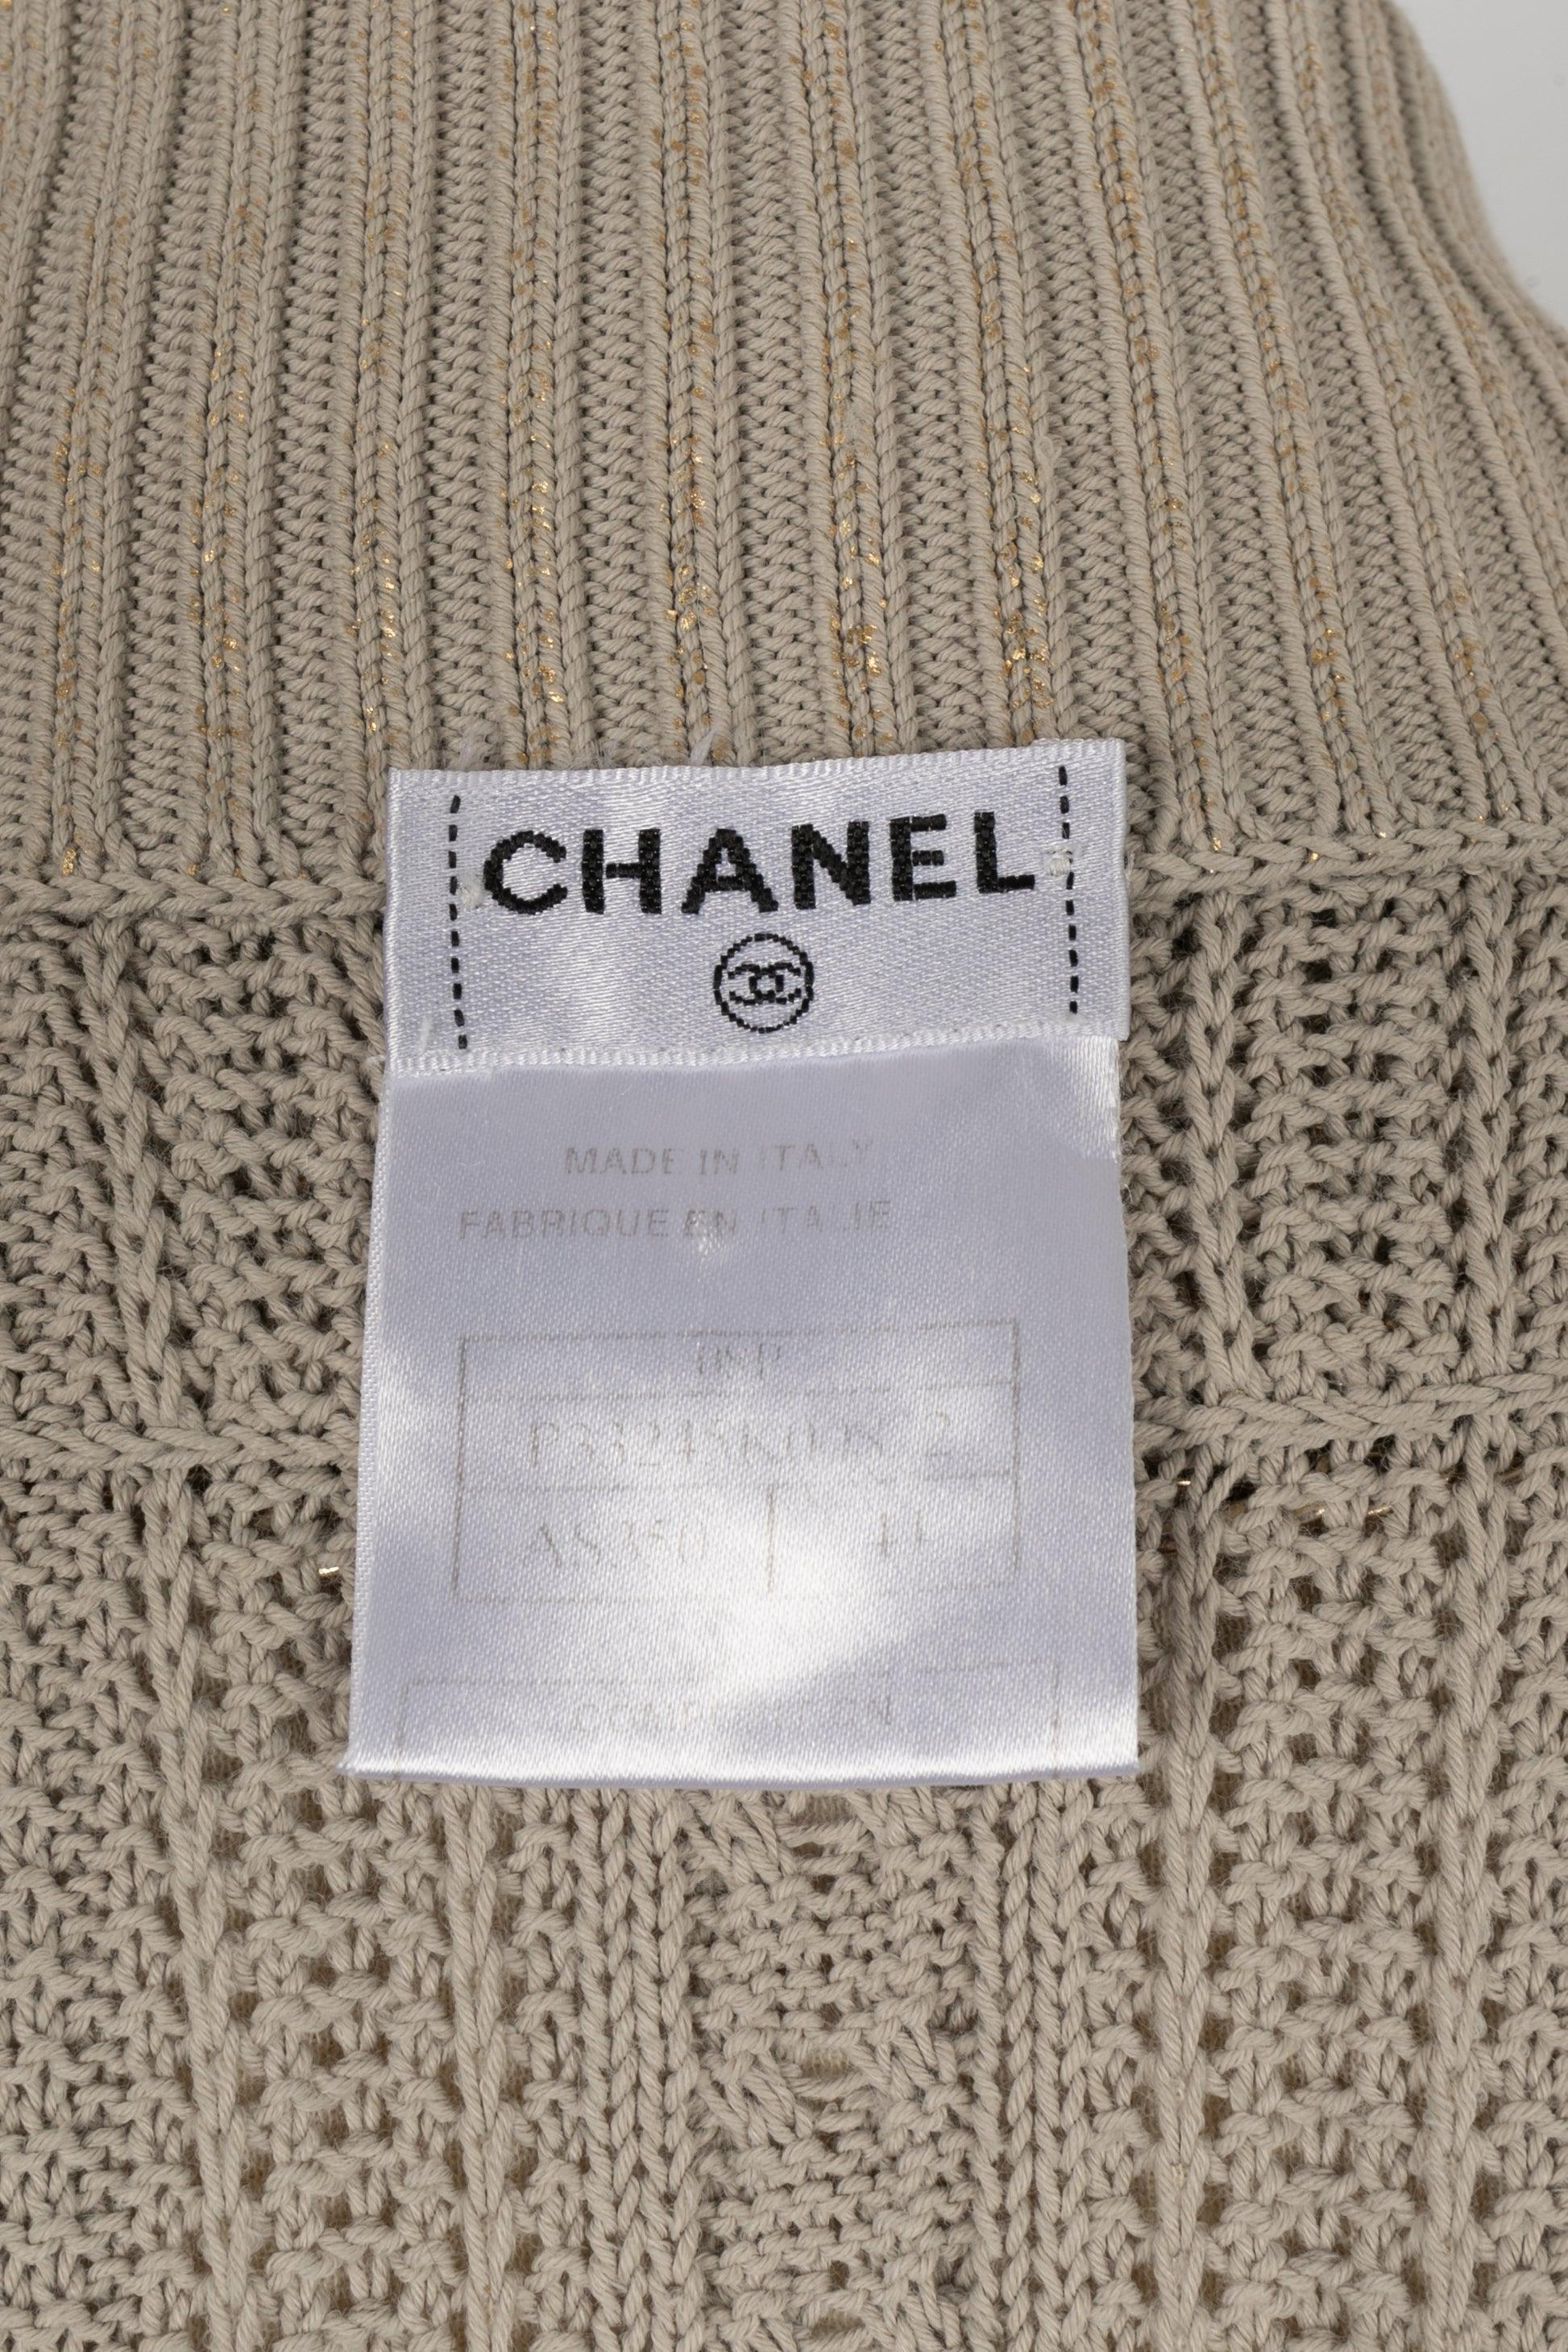 Chanel Coated Mesh Cardigan in Beige/Golden Tones, 2008 For Sale 5